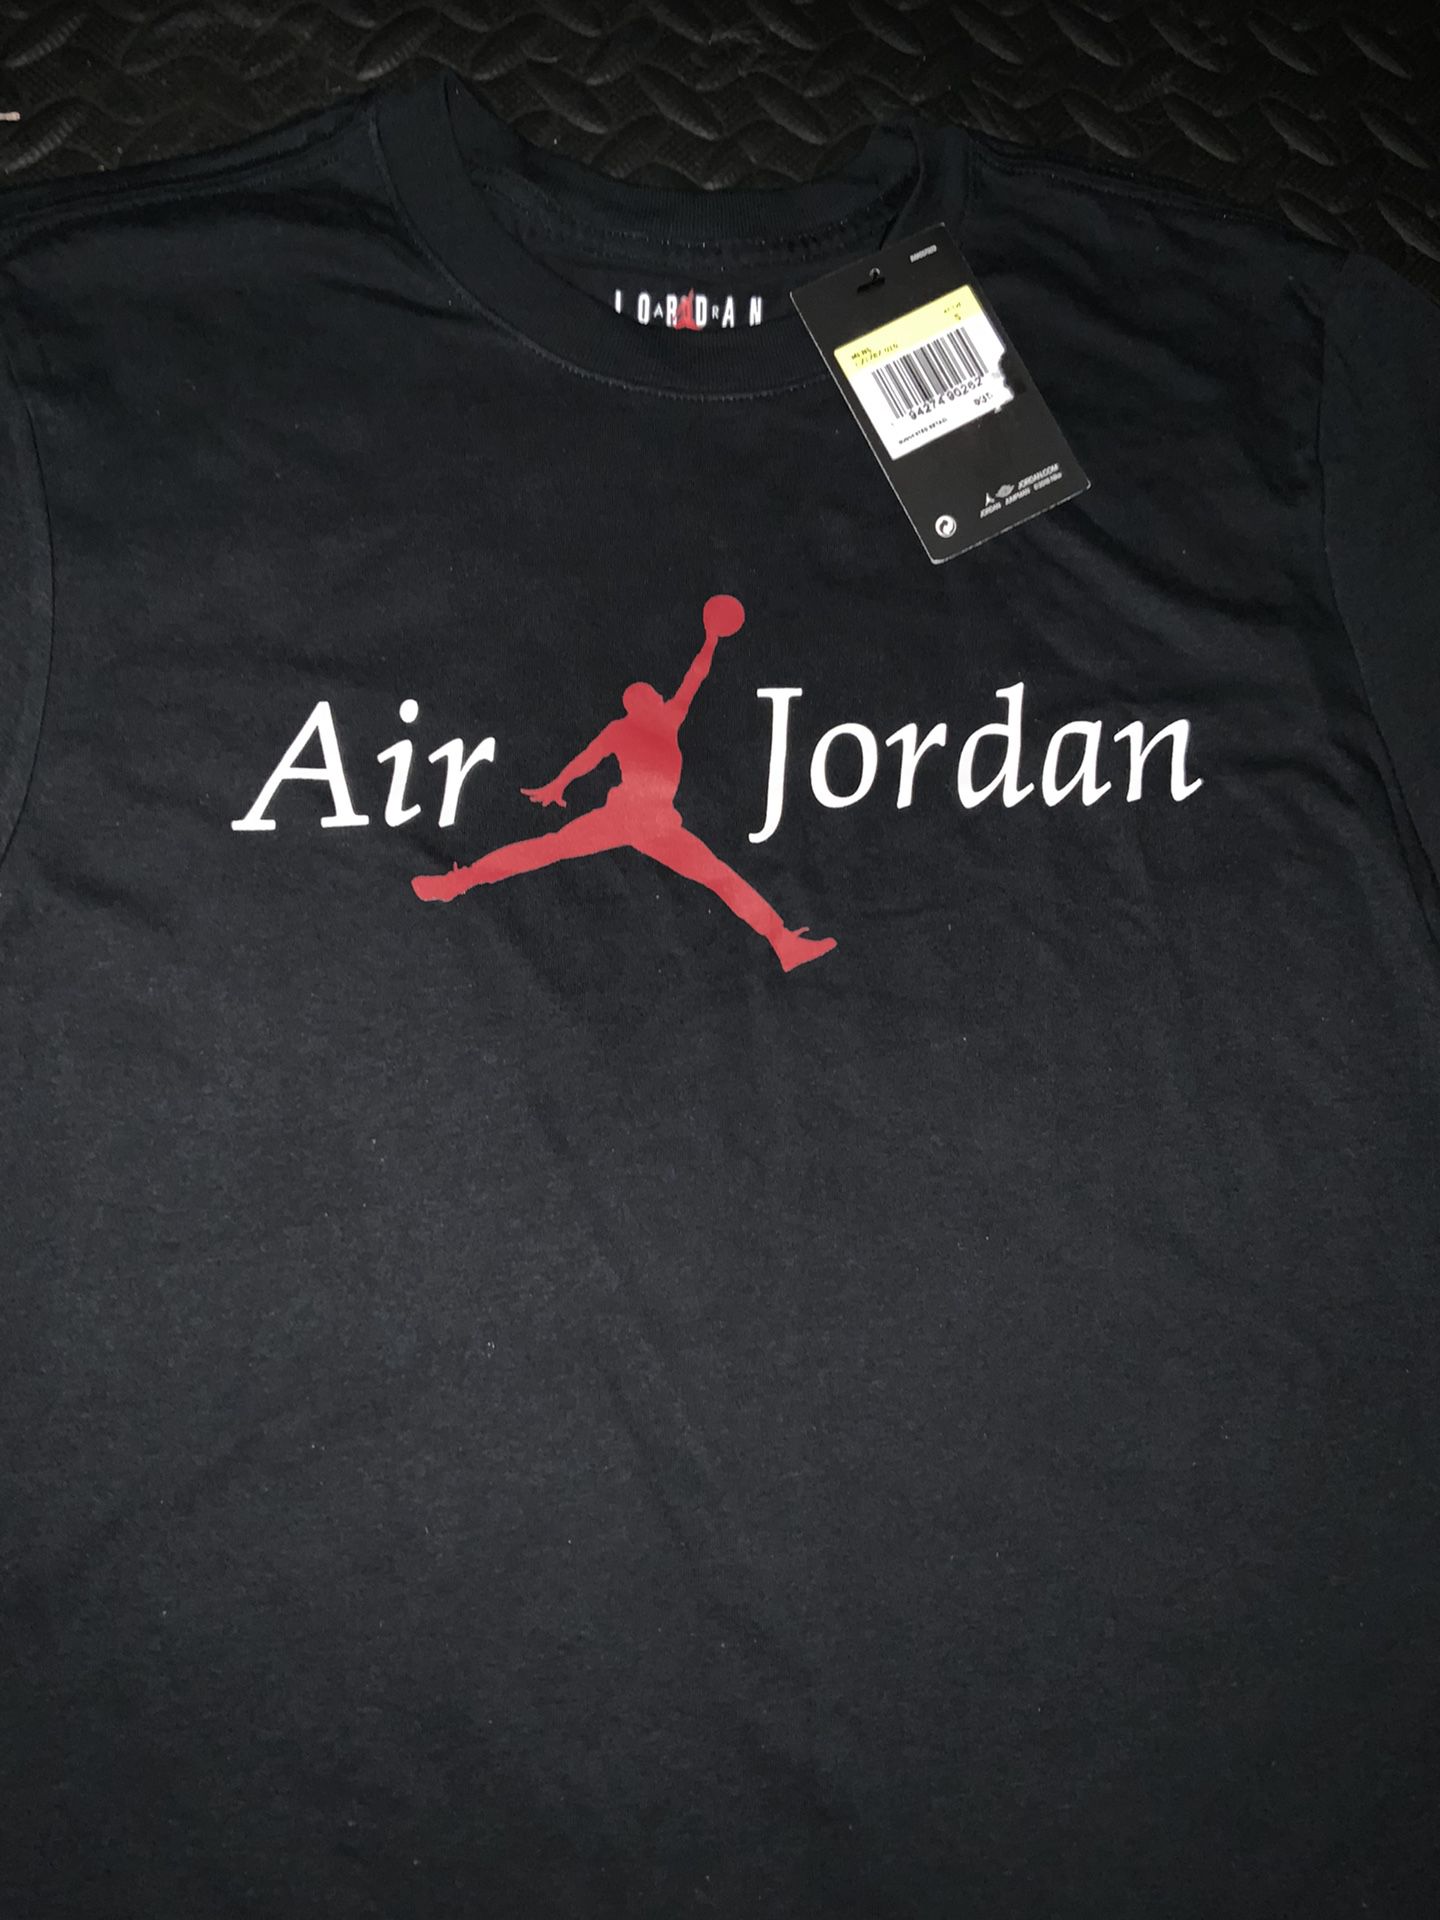 Nike Air Jordan T-shirt Men’s Size Small